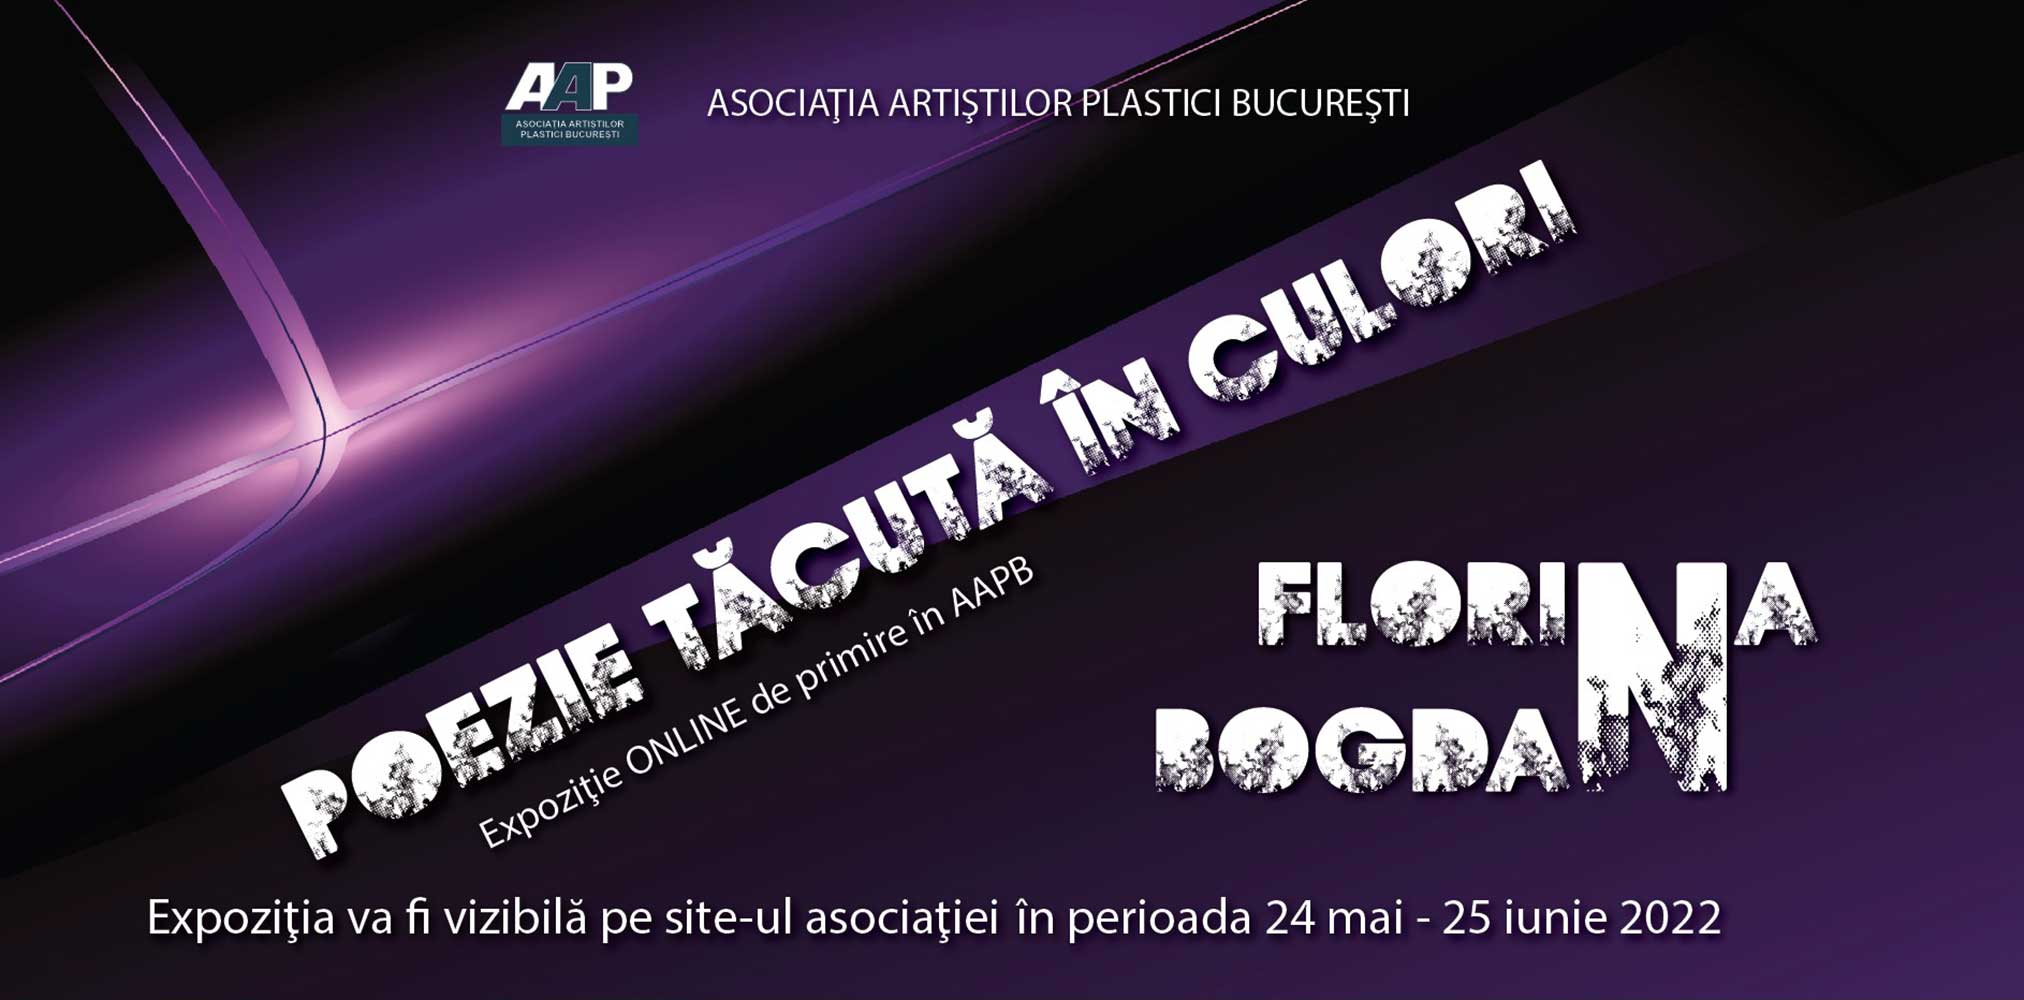 Florina Bogdan „POEZIE TĂCUTĂ ÎN CULORI” - expoziţie de primire în AAPB - (20 mai - 21 iunie 2022) - ONLINE